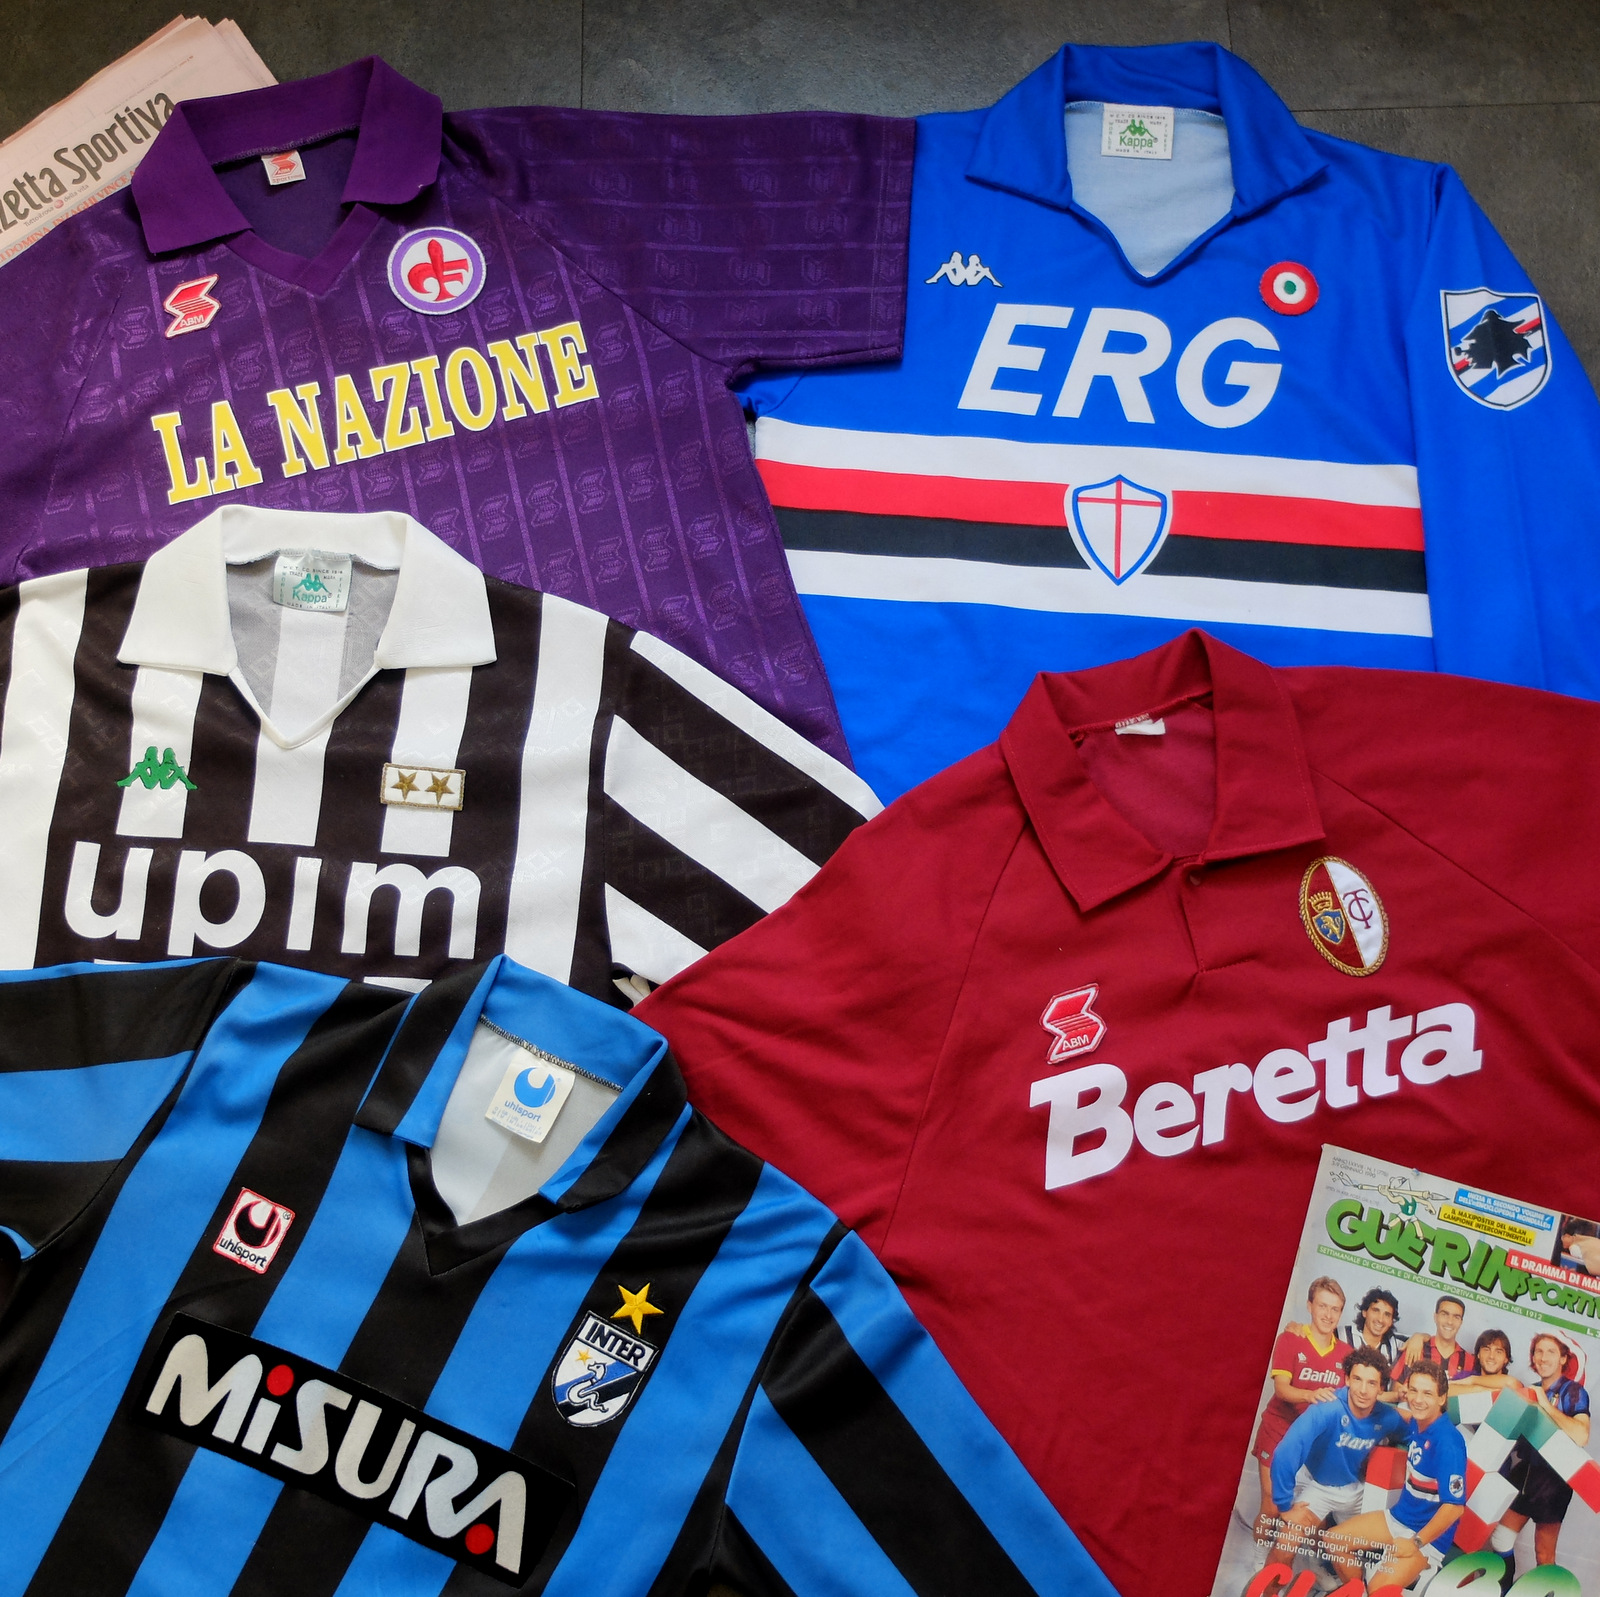 Modena Kit History - Football Kit Archive